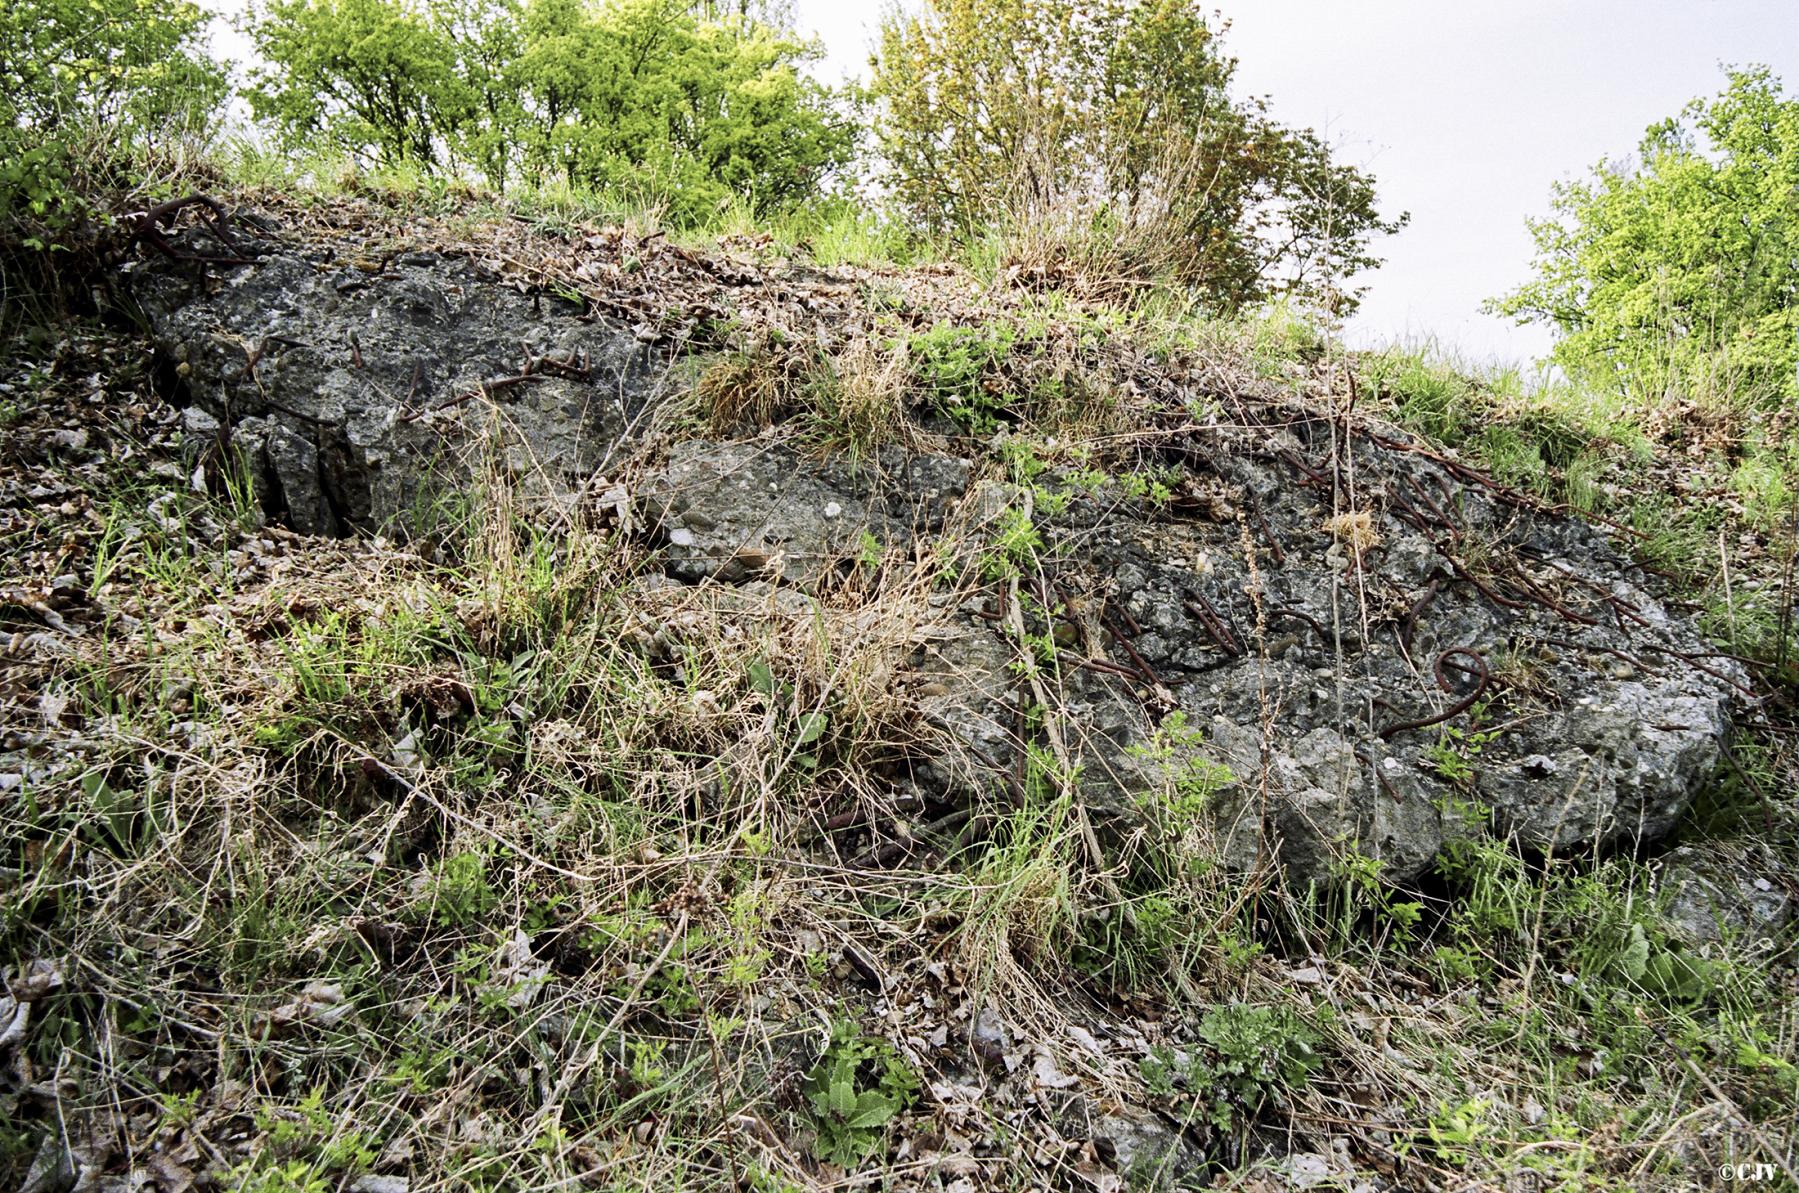 Ligne Maginot - BASSIN AUX PETROLES - (Casemate d'infanterie - Double) - Restes de béton apparents